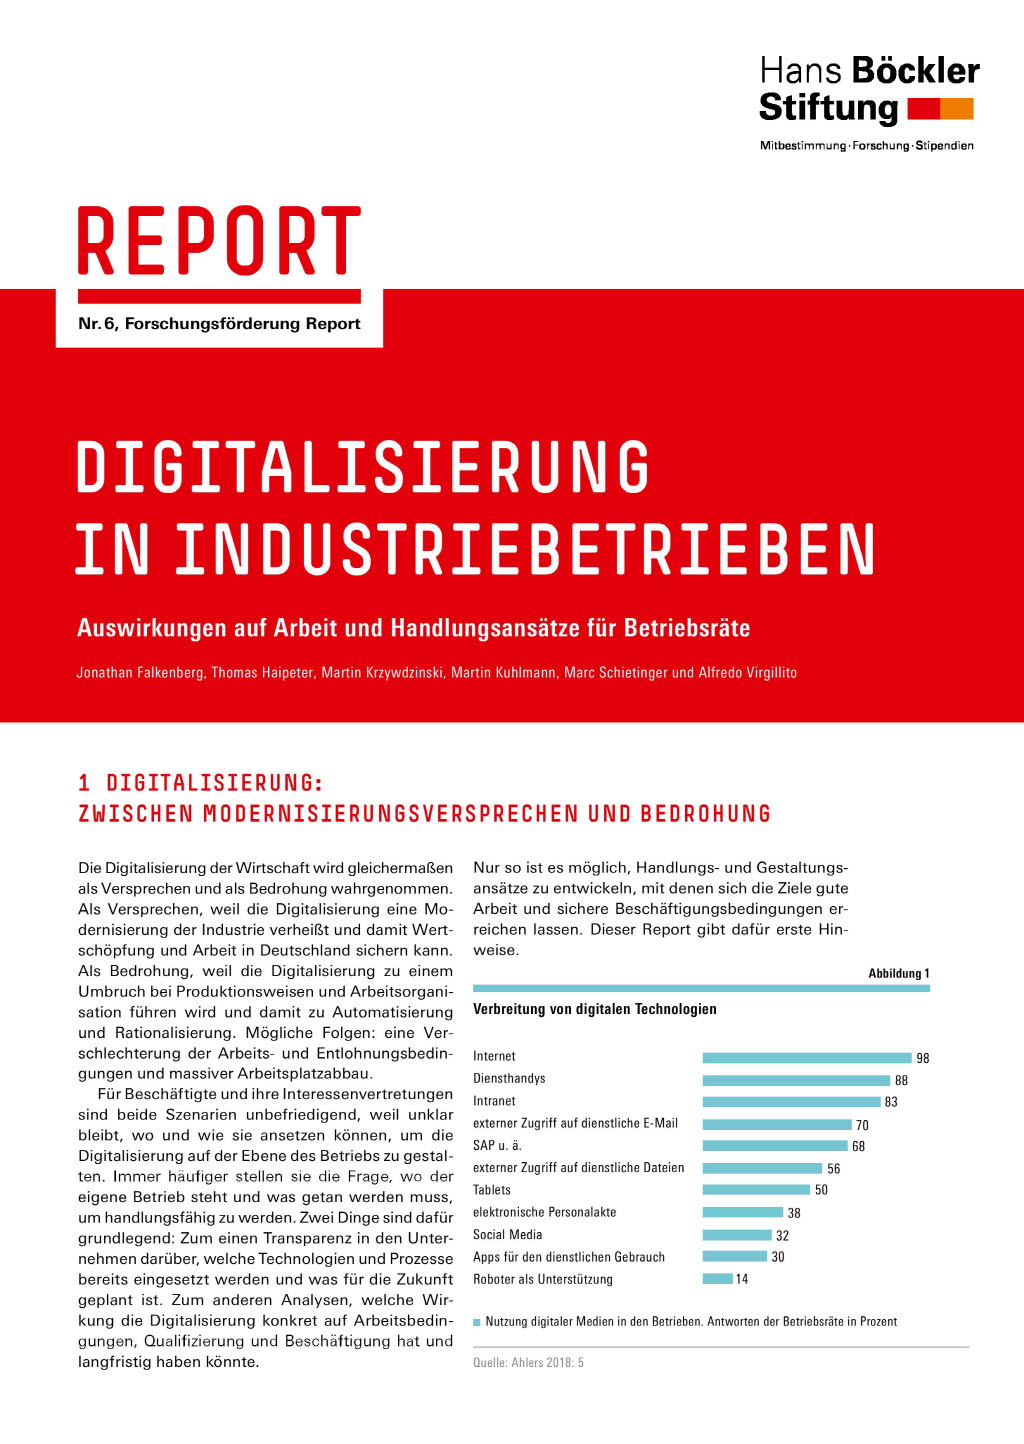 Digitalisierung in Industriebetrieben